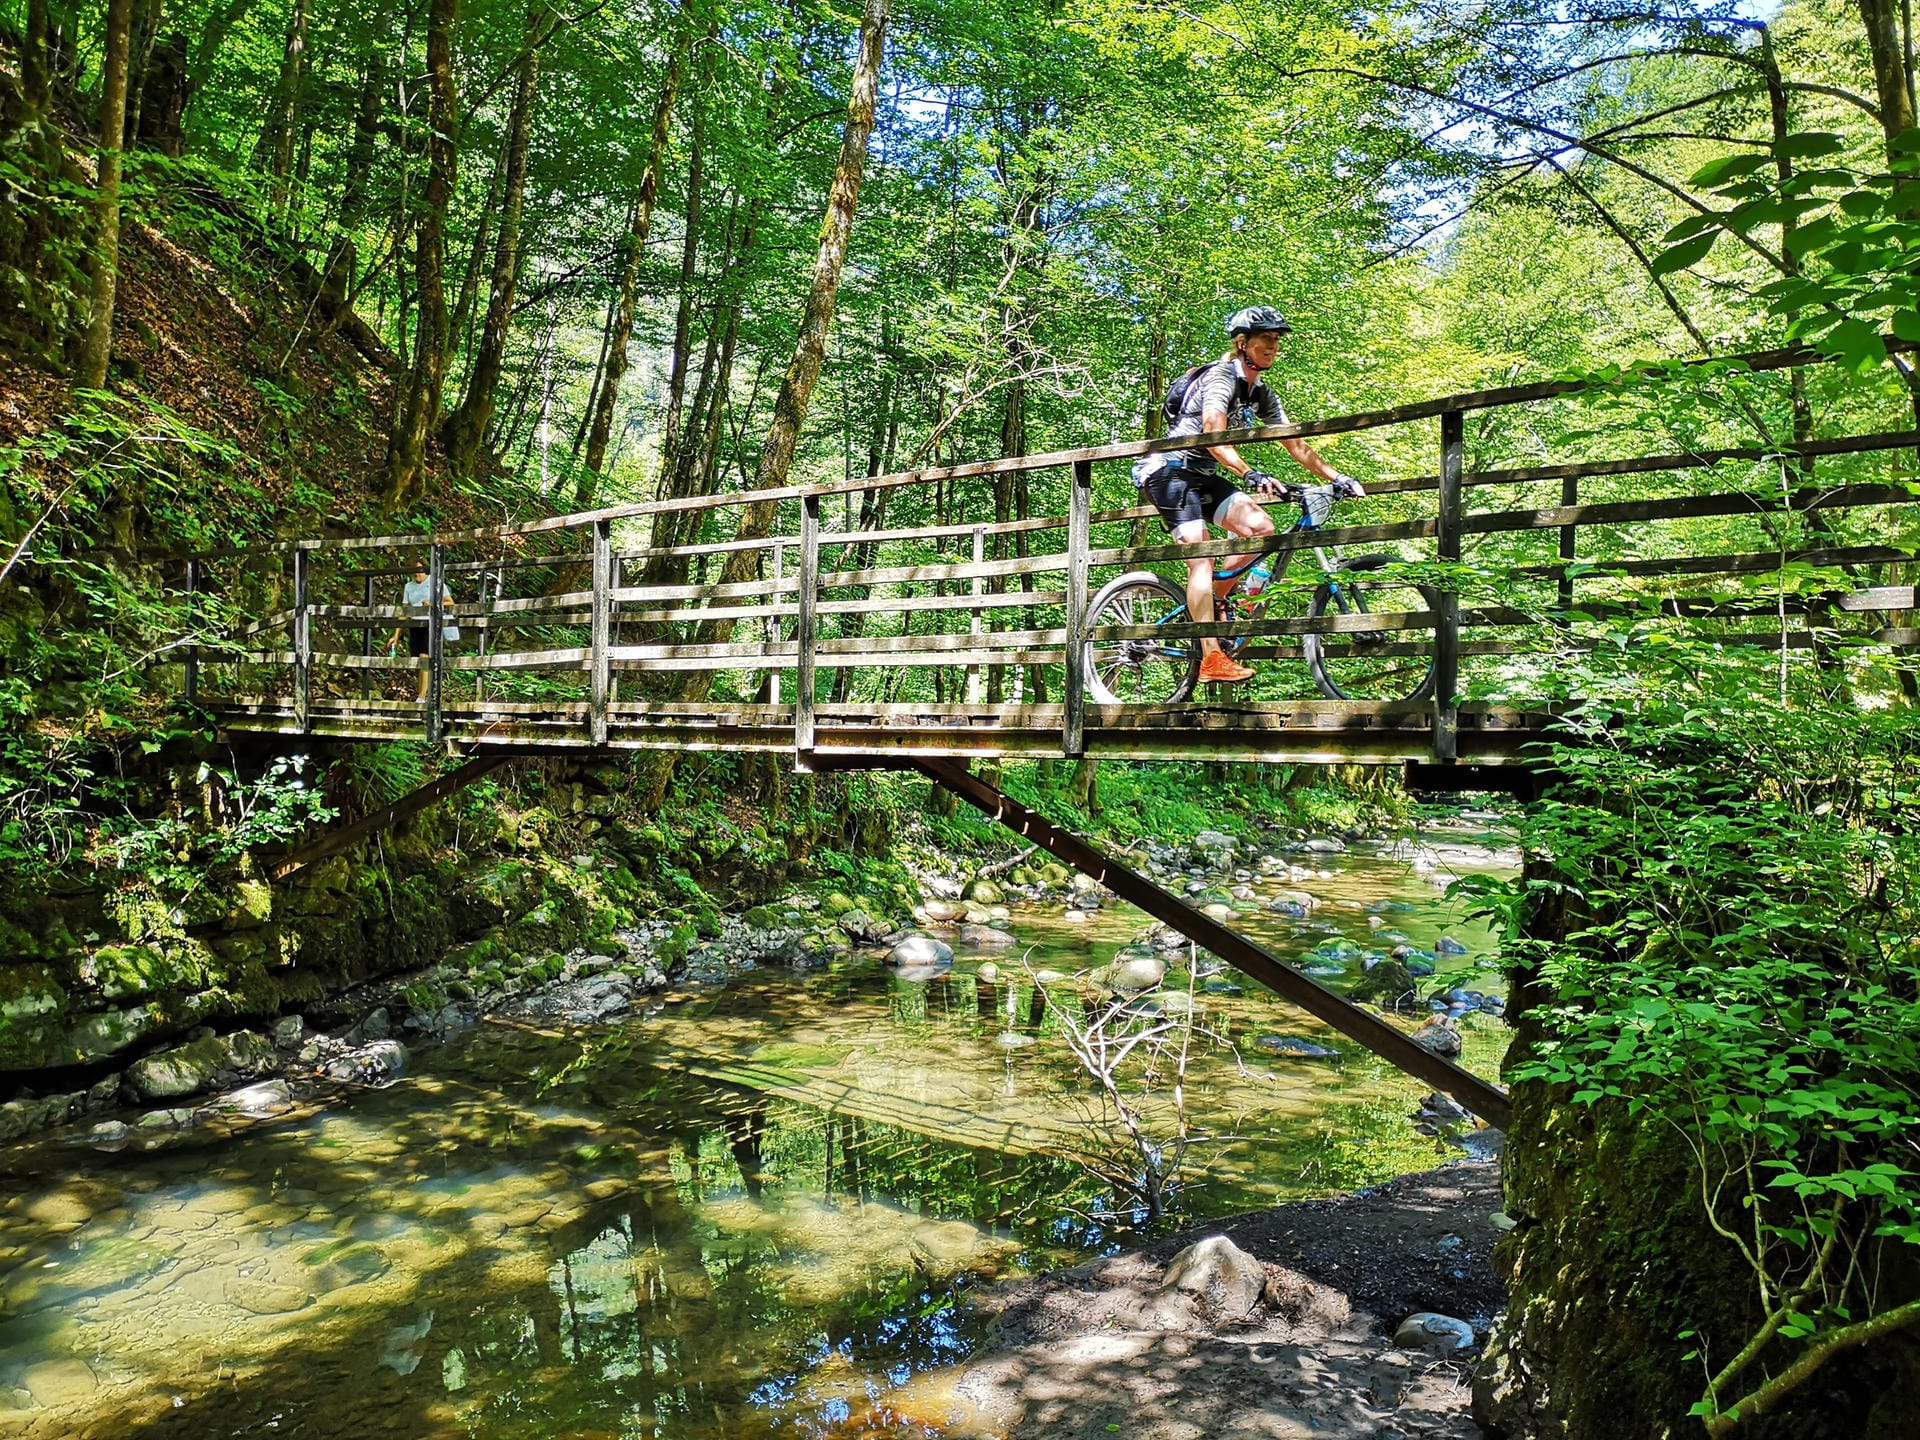 Aktivurlaub: Die Hochebene von Gorski kotar im Nordwesten Kroatiens ist eines der letzten Wildnis-Gebiete Europas. Auch spezielle Routen für Radfahrer gibt es hier.